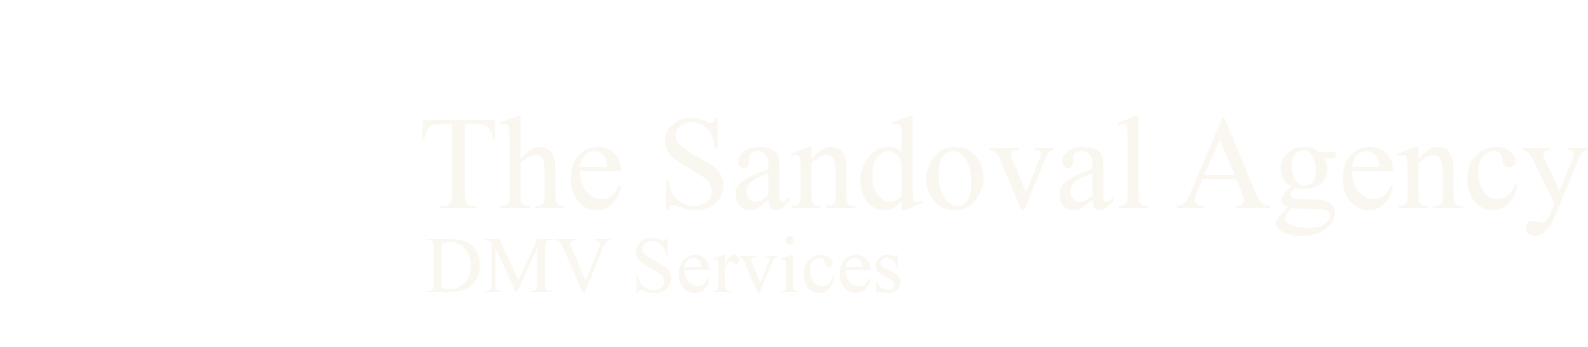 The Sandoval Agency